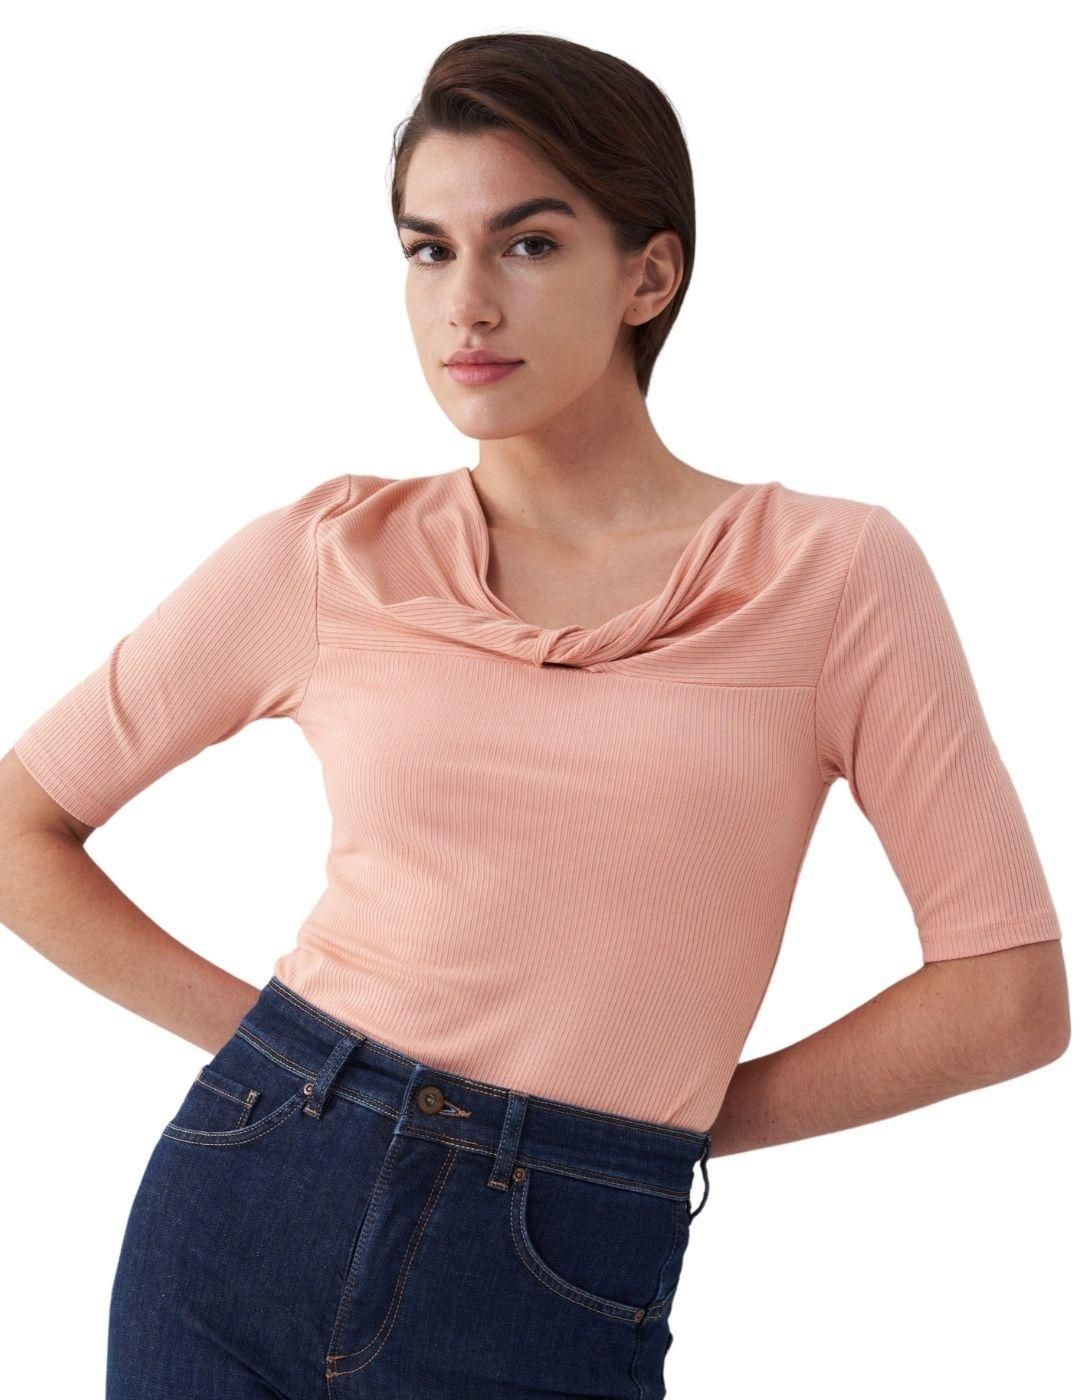 Camiseta con nudo en escote Salsa Jeans Rosa - Bicos de Fío